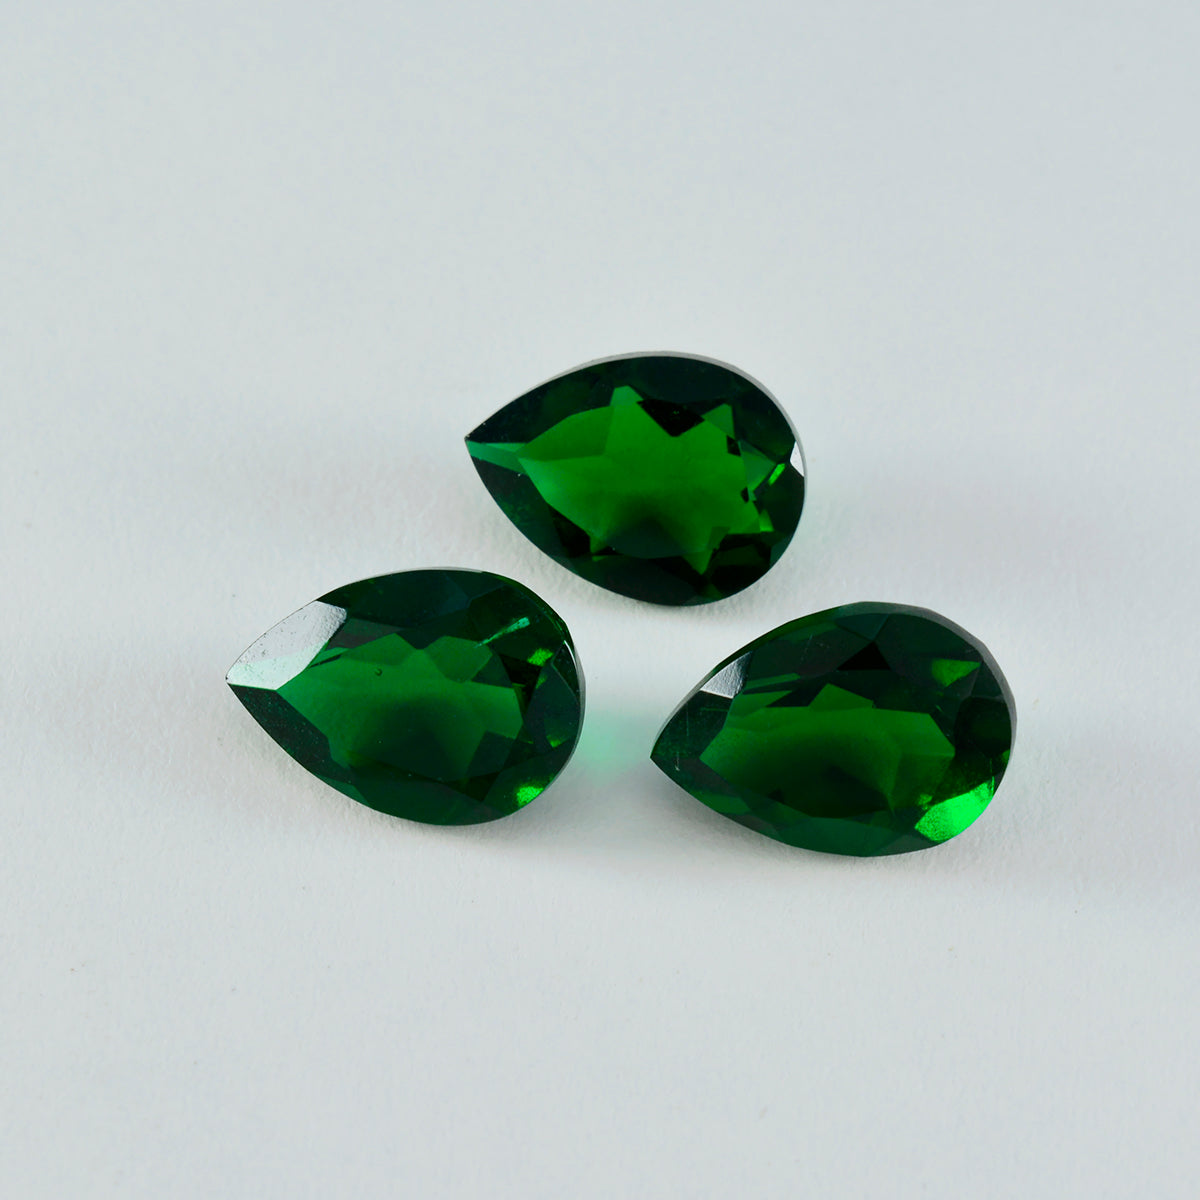 riyogems 1 шт., зеленый изумруд, граненый циркон, 12x16 мм, грушевидная форма, превосходное качество, россыпь драгоценных камней